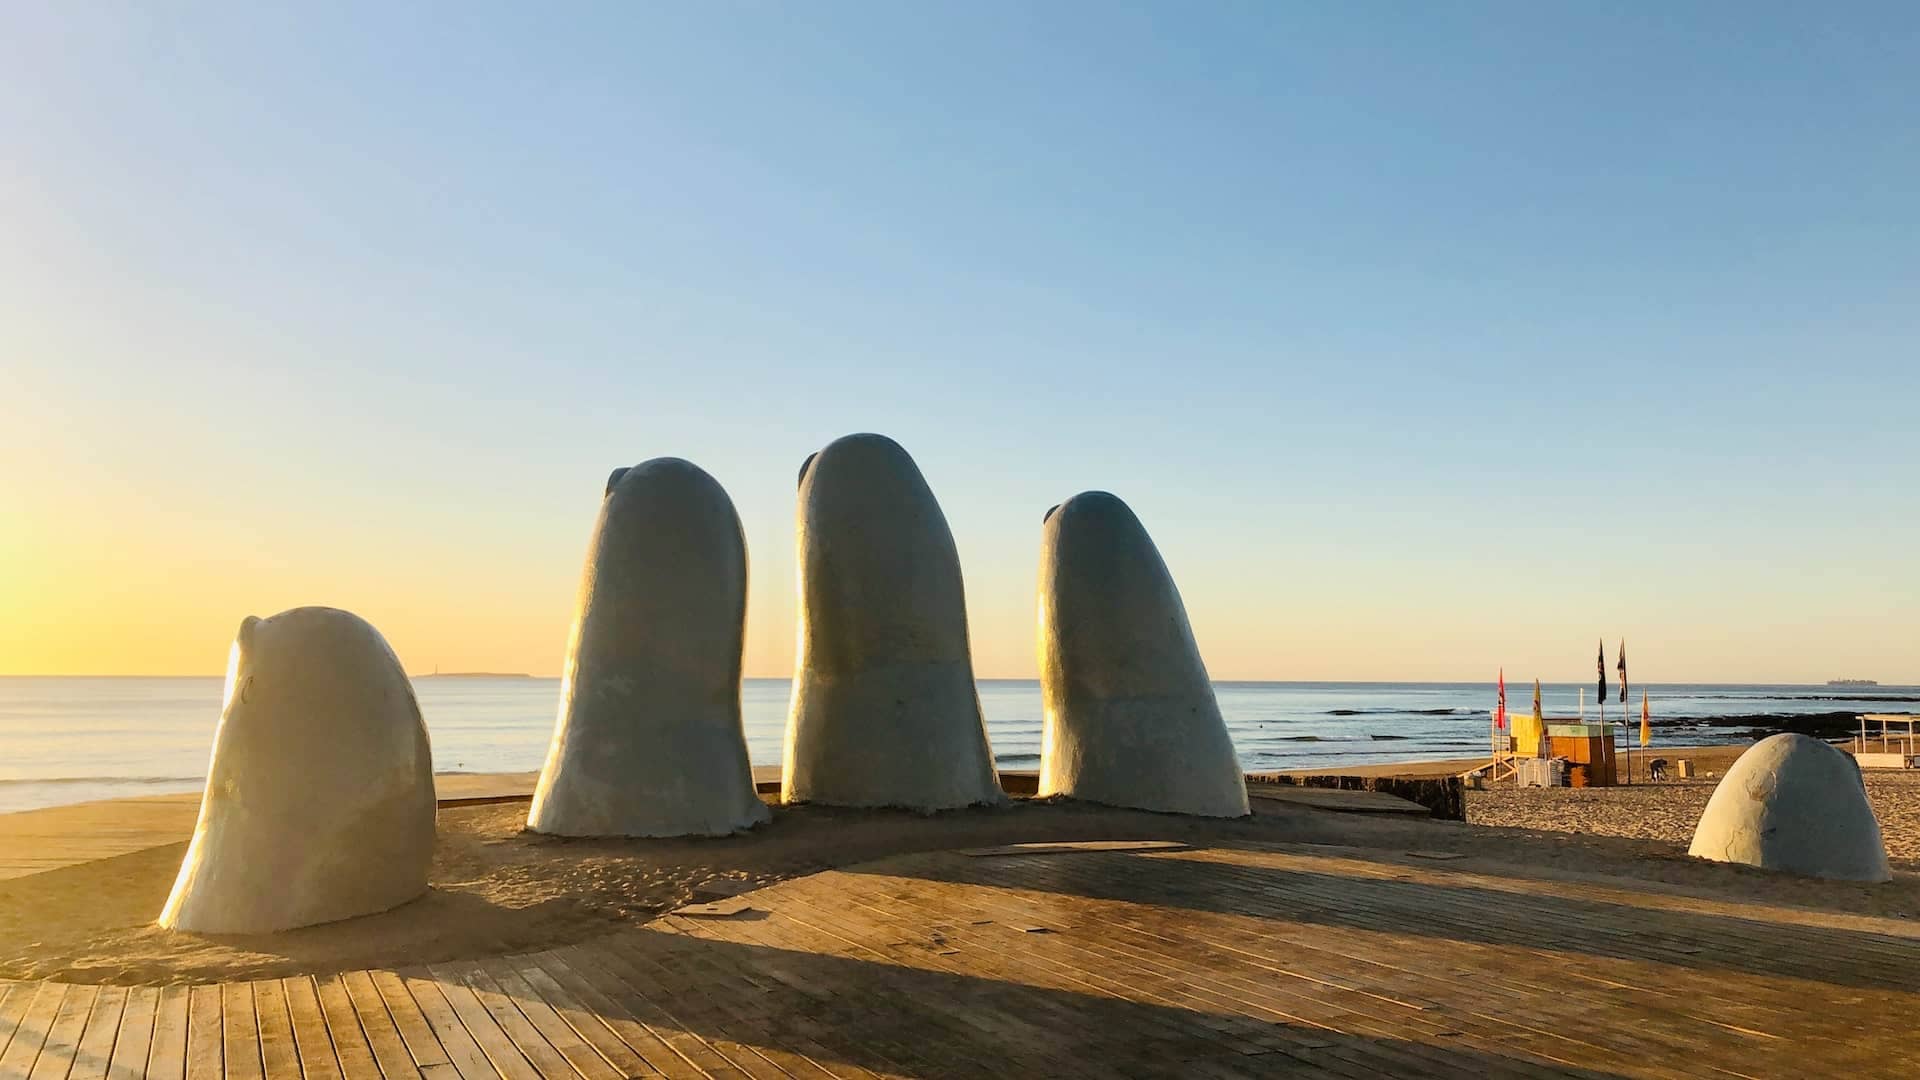 Sculpture La Mano de Punta del Este, Uruguay